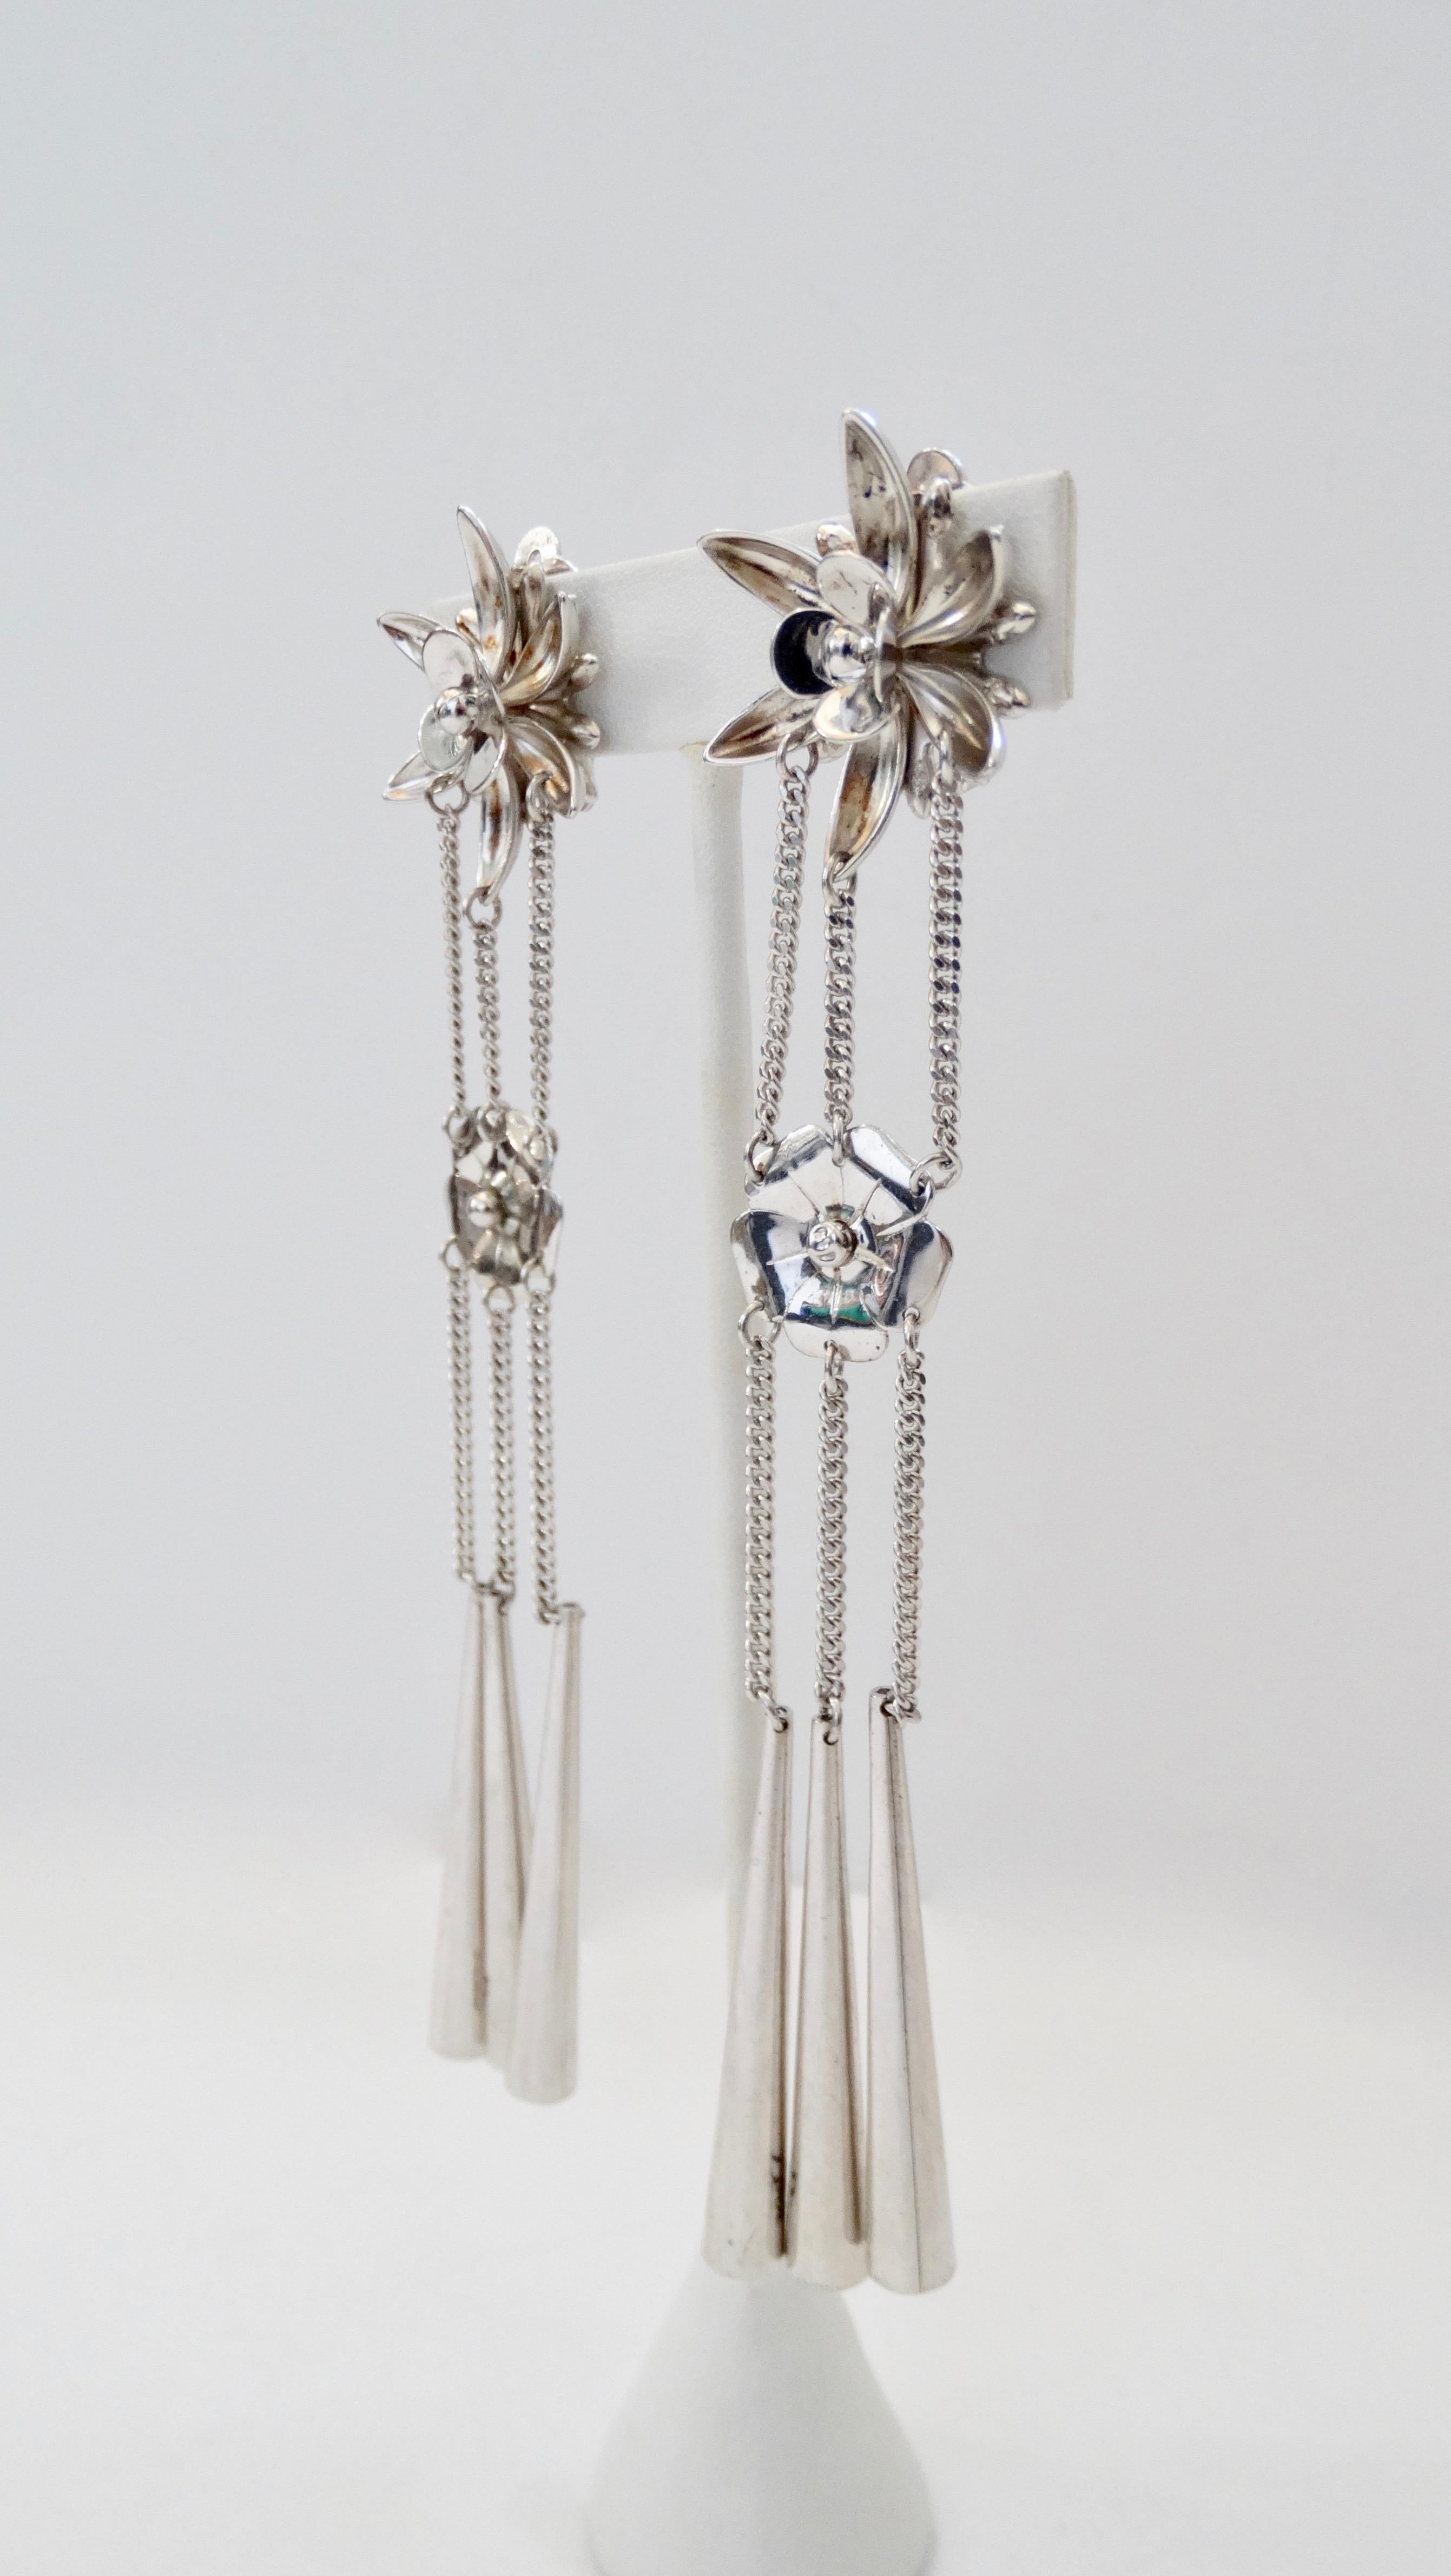 Diese Kunstwerke von John Galliano für Dior sind ein echter Augenschmaus! Diese Ohrringe aus der Herbst/Winter-Kollektion 2003/2004 zeigen Einflüsse aus der chinesischen und japanischen Kultur. Gefertigt aus Silber und verziert mit einer